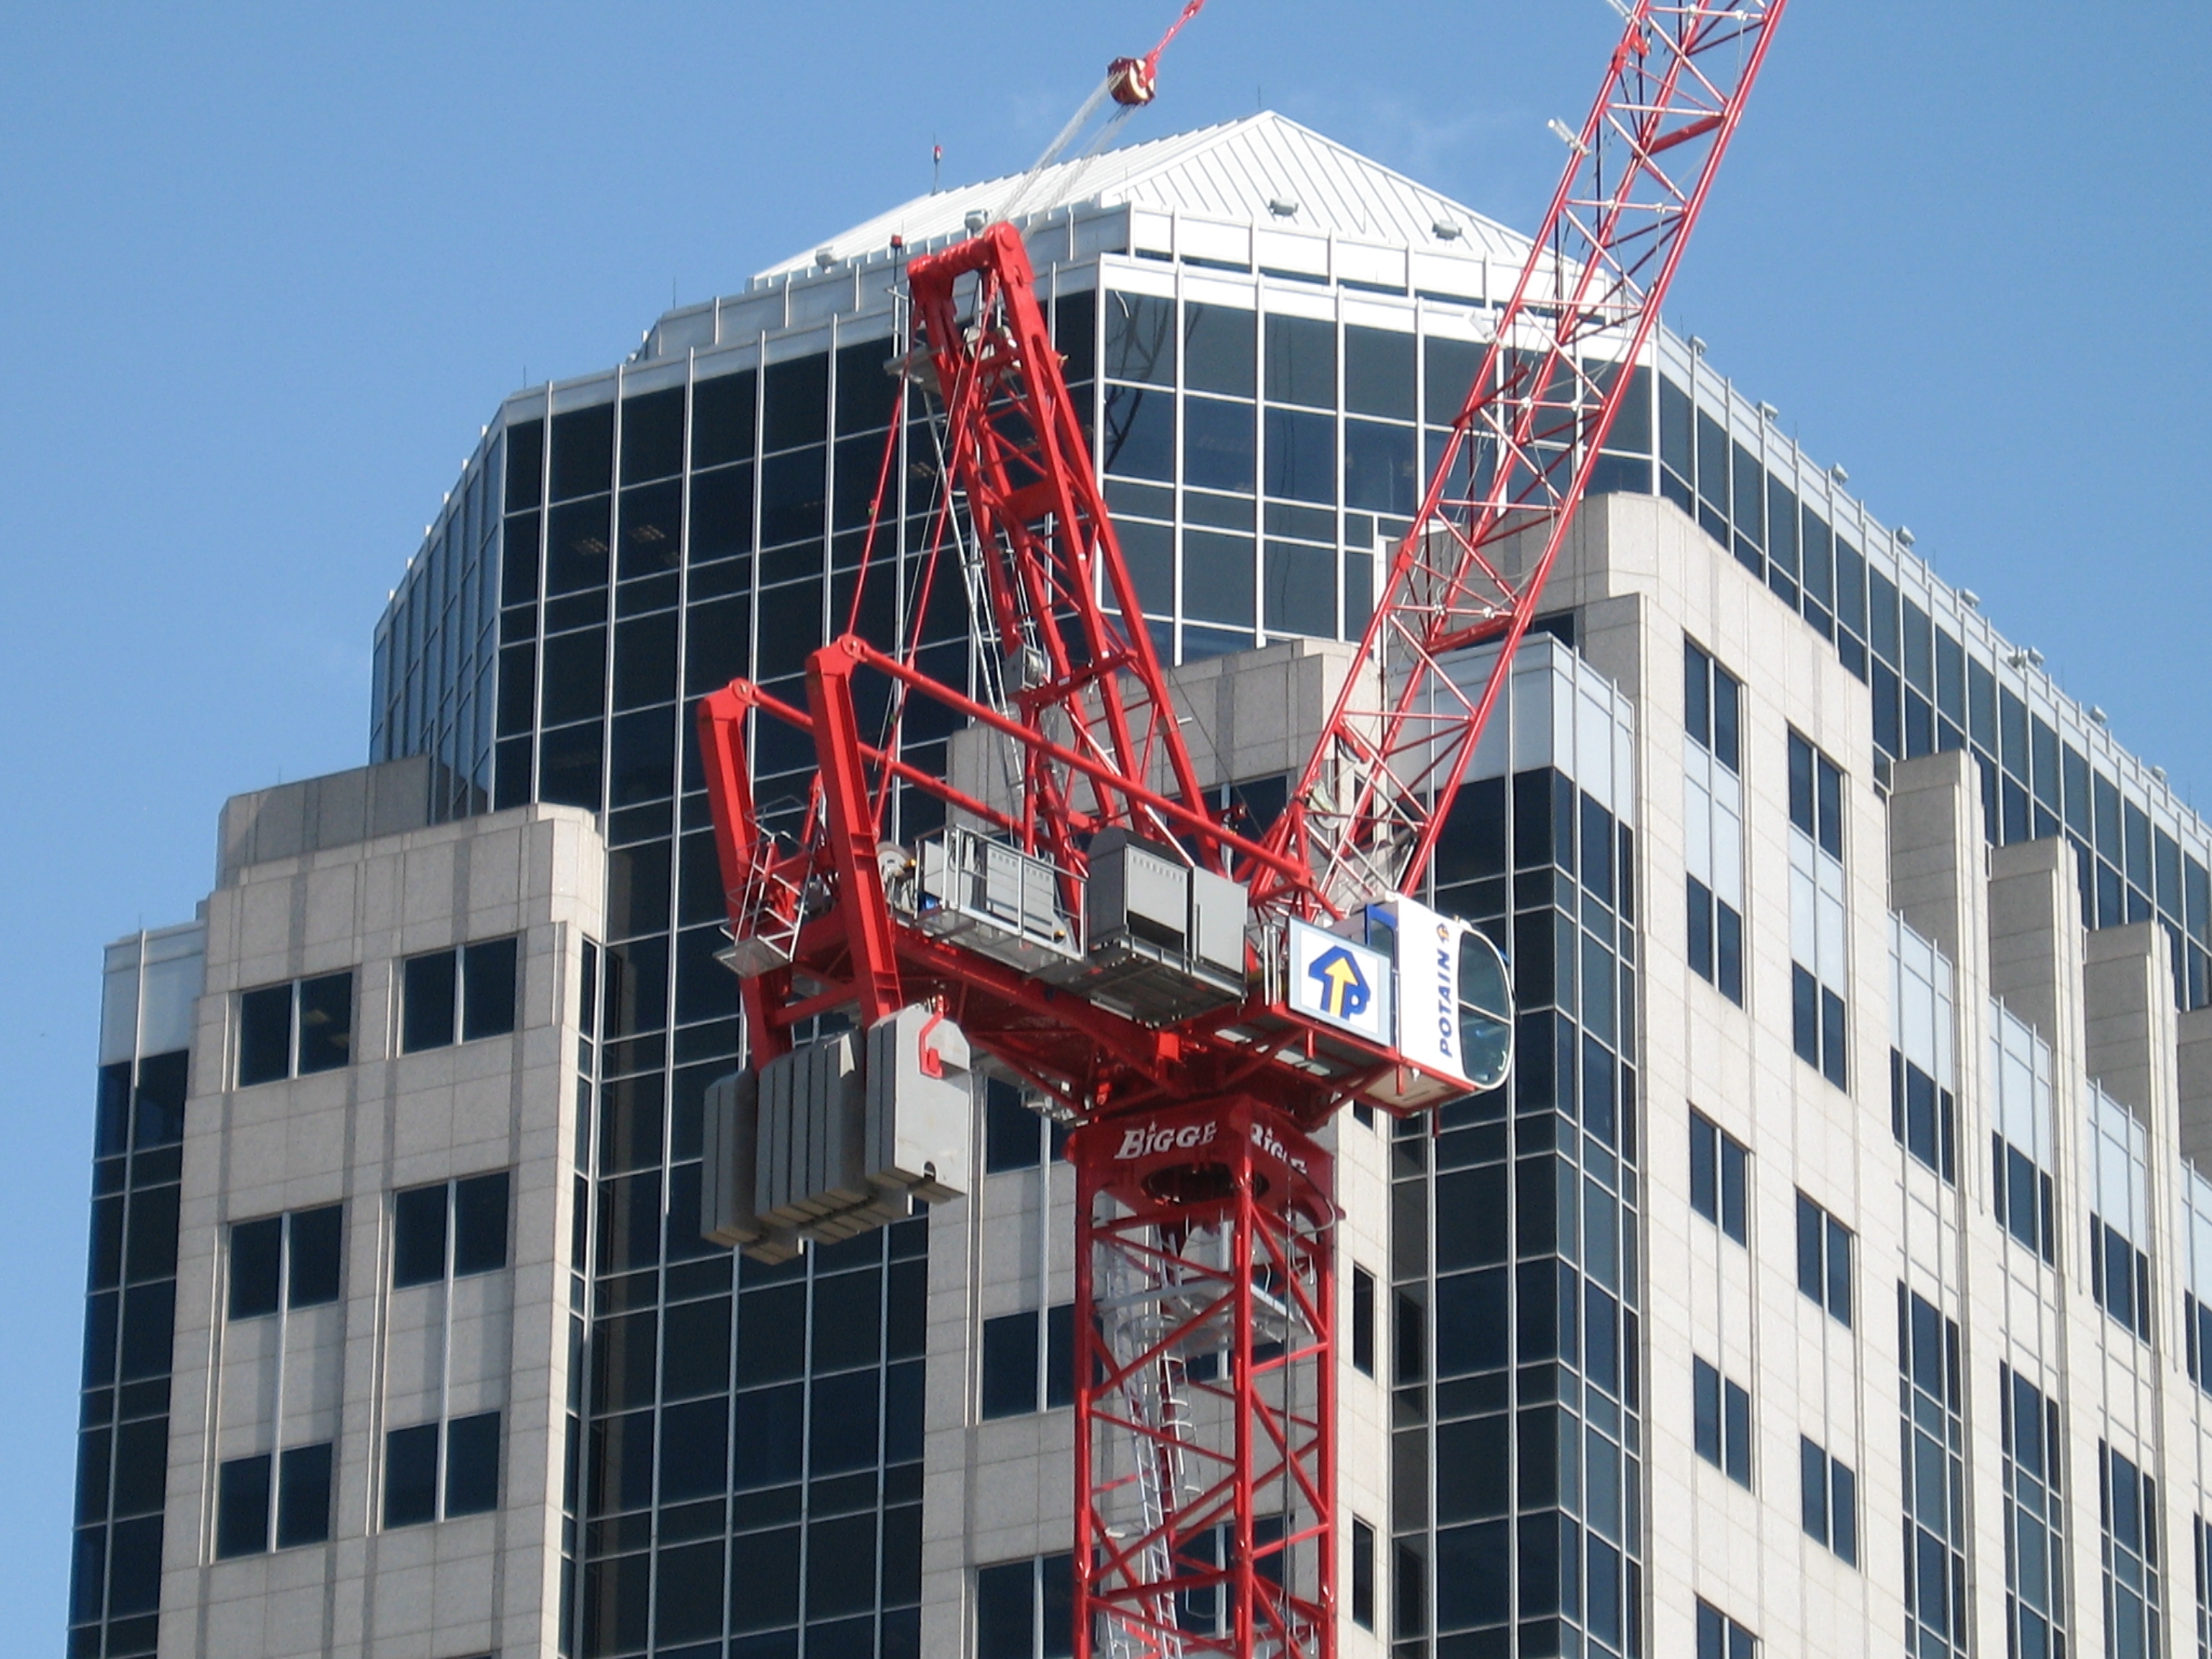 Tower Crane at Work Image